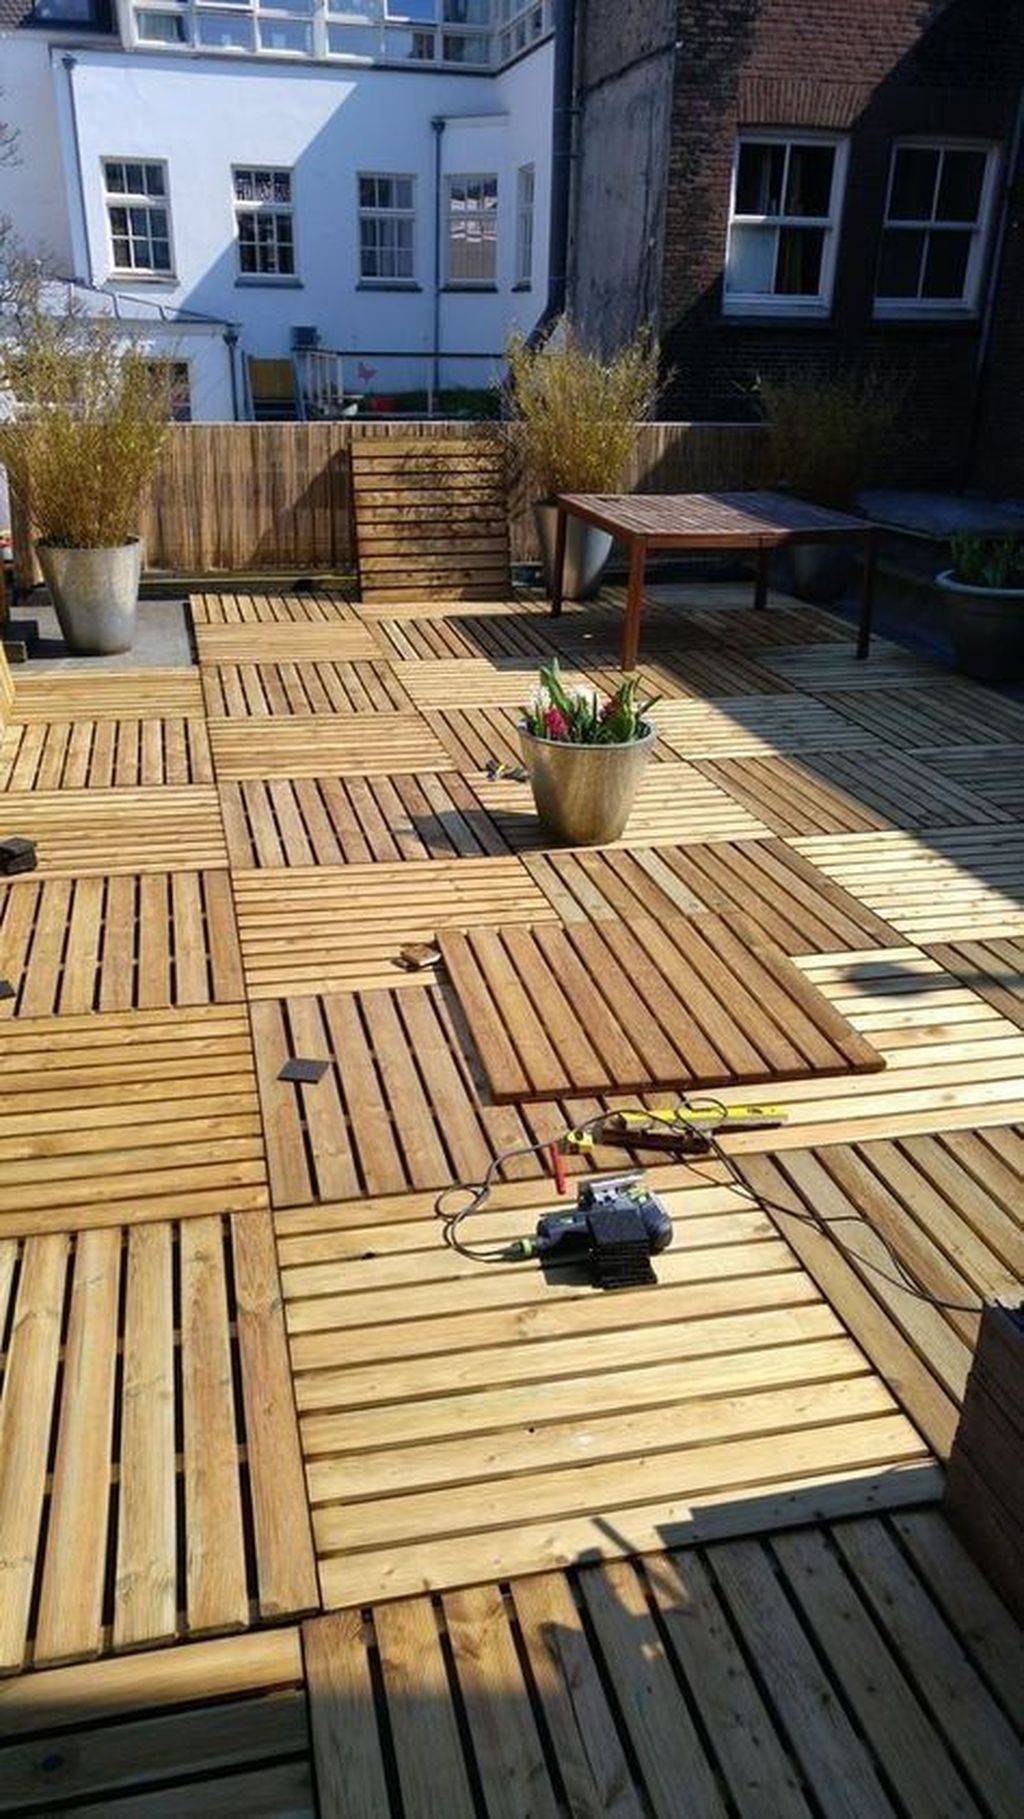 X Pack Wooden Deck Floor Tiles Decking Garden Wood Terrace Flooring